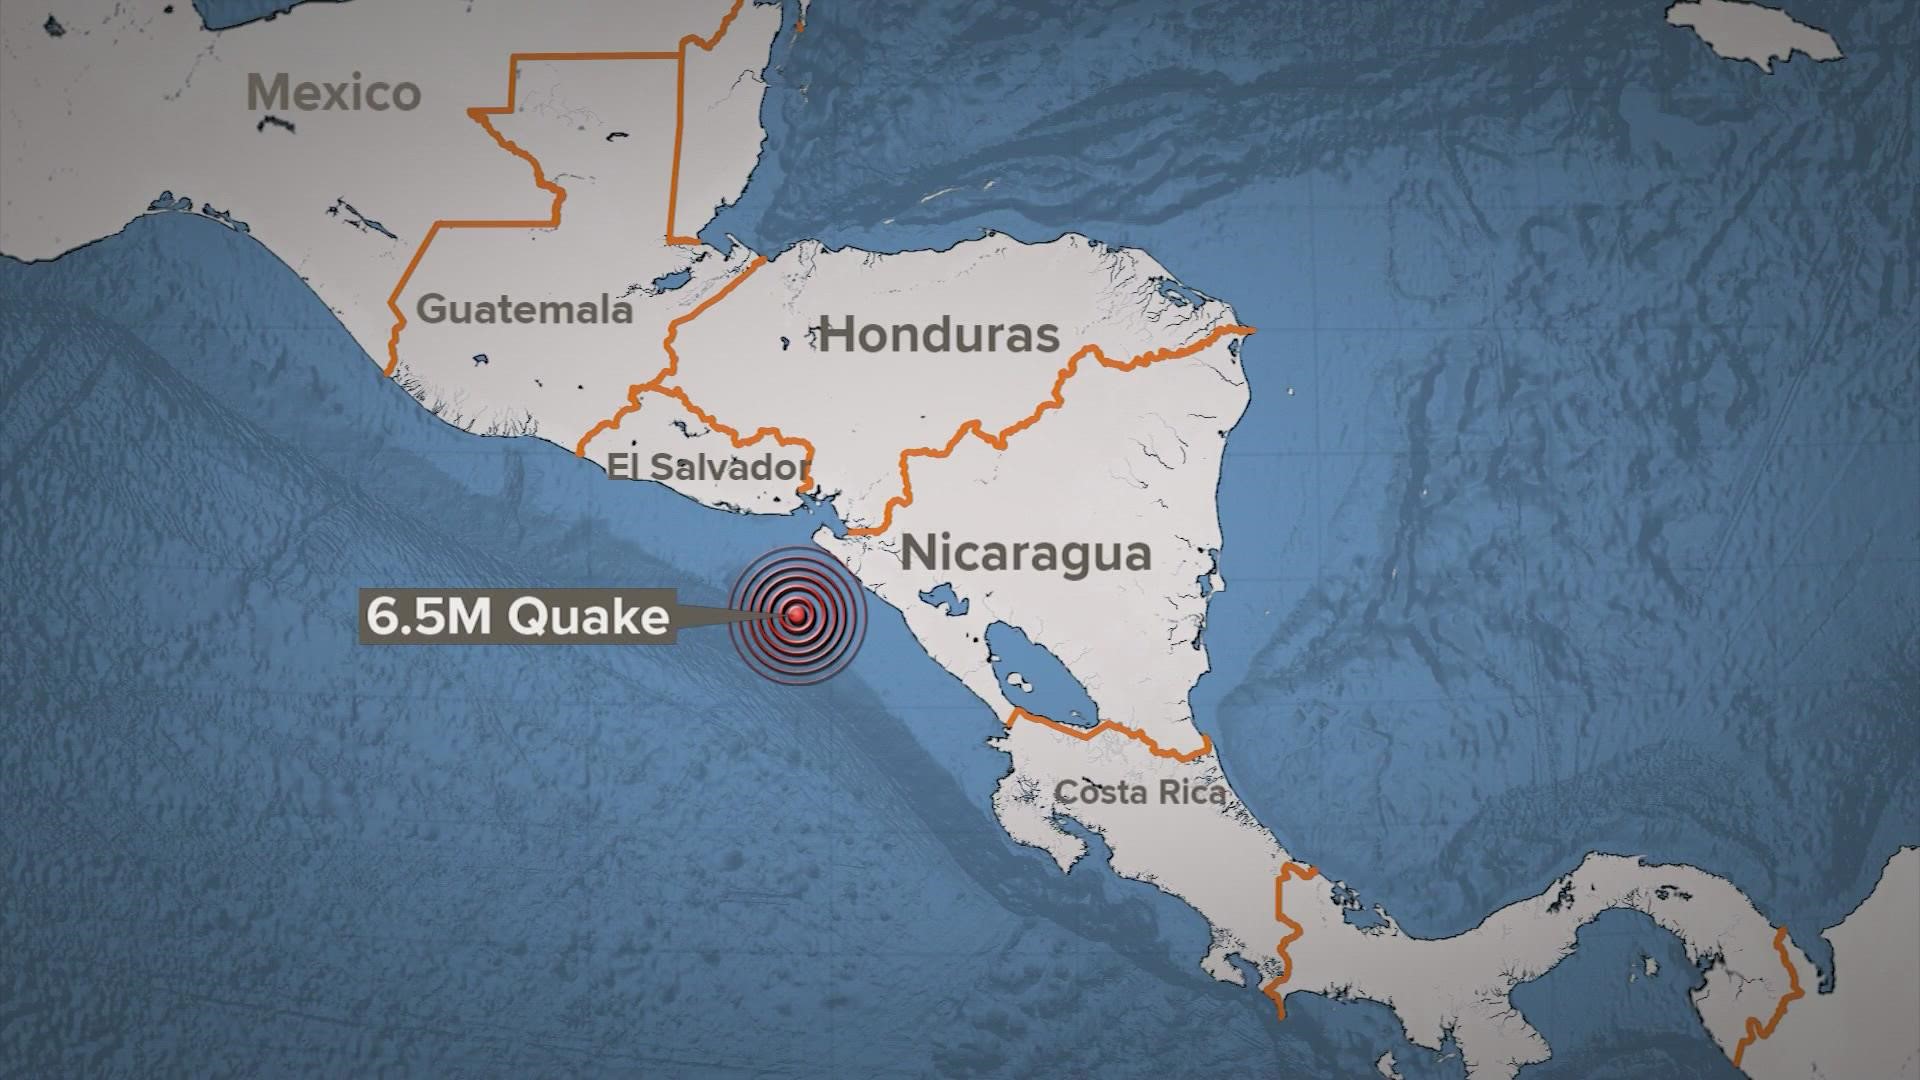 6.1 Magnitude Earthquake Shakes Coast of Nicaragua